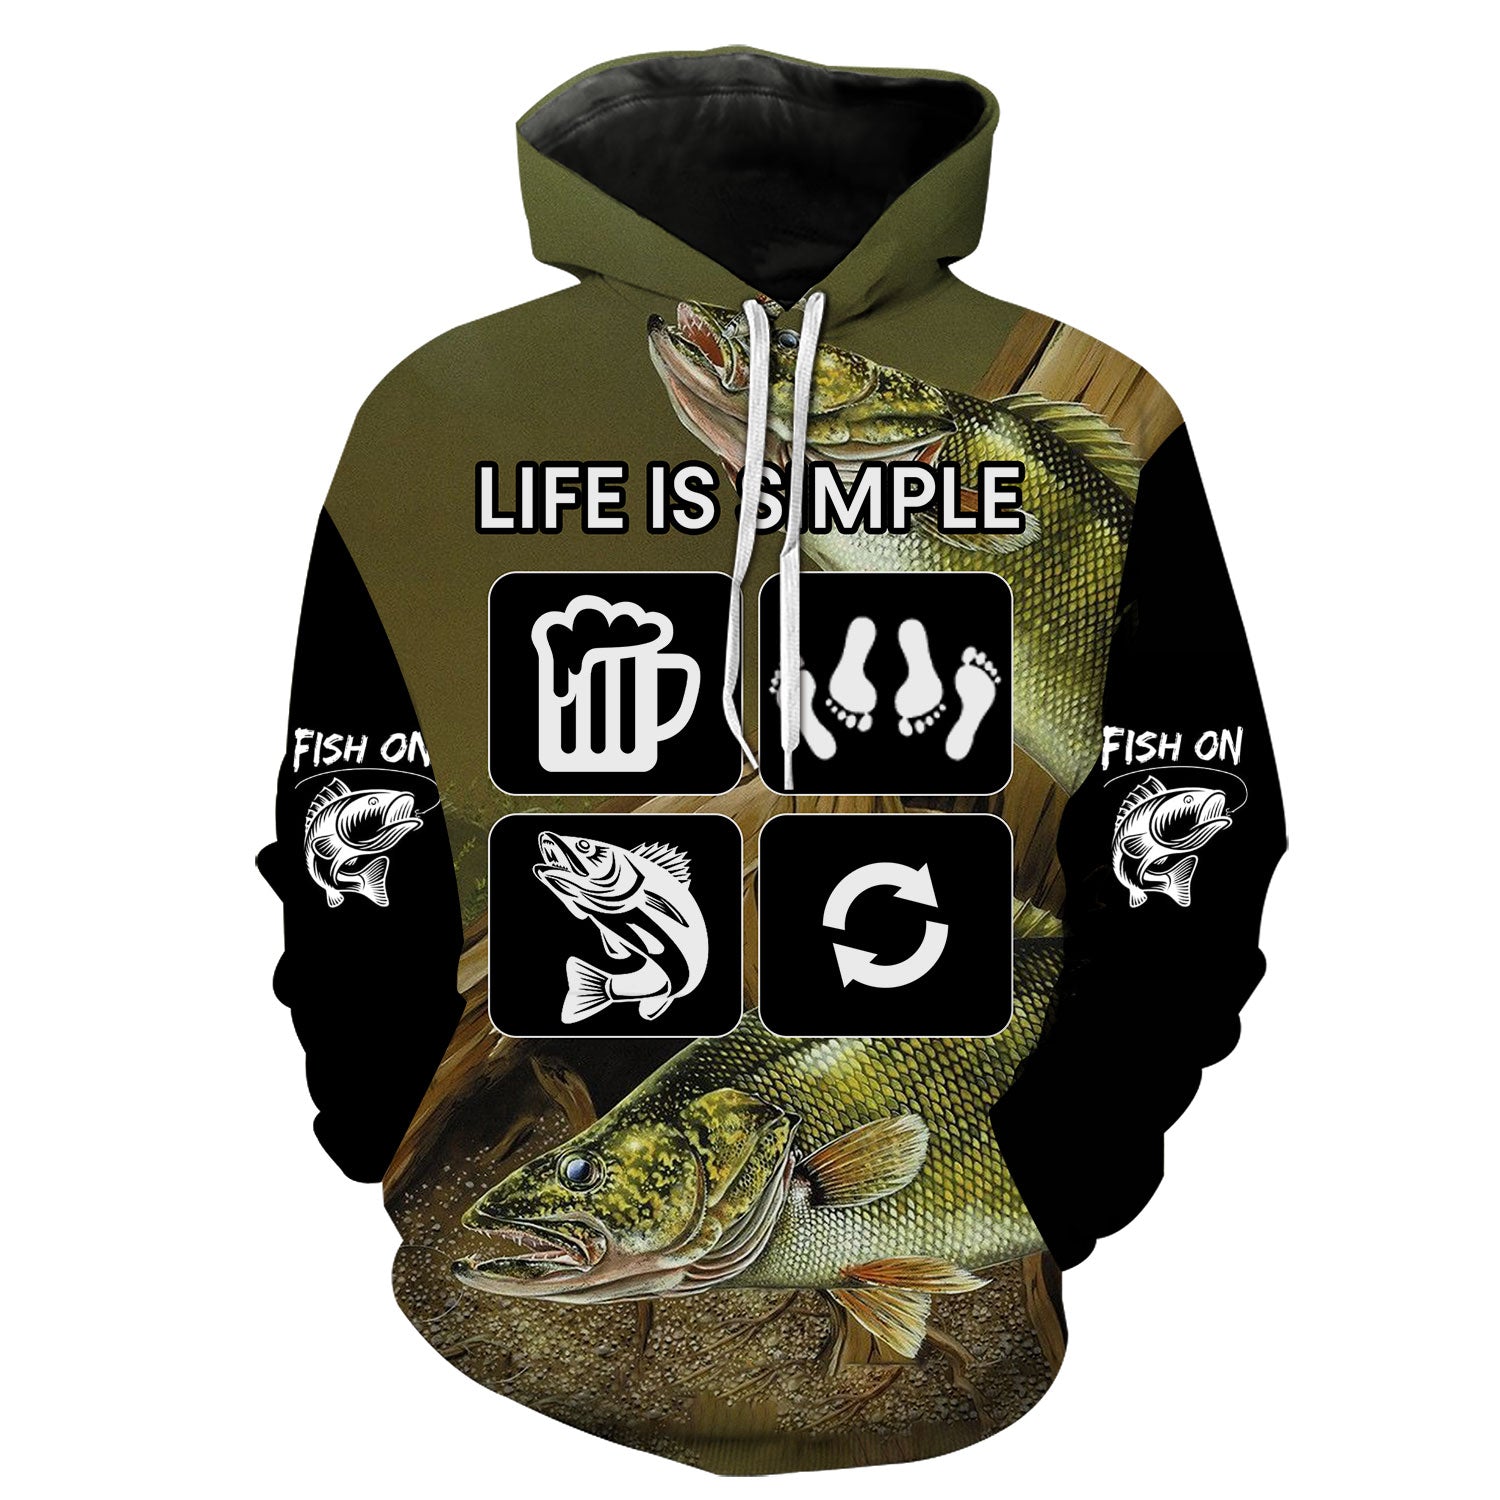 Life is Simple - Fish on Hoodie